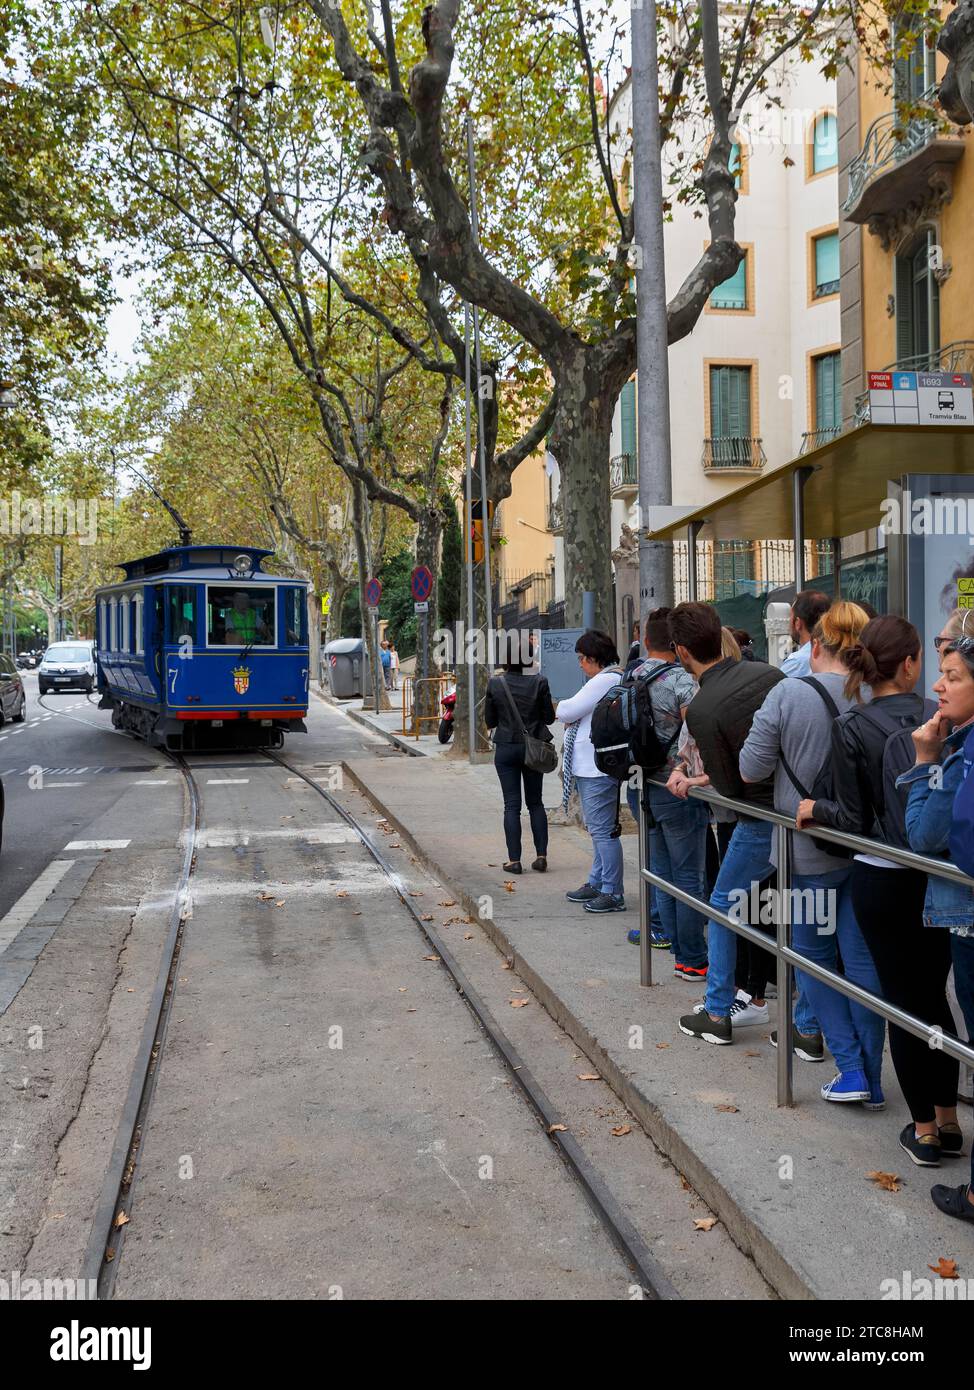 Nostalgico tram blu, gruppo turistico che aspetta alla fermata, Tramvia Blau, Art Nouveau, Barcellona, Spagna Foto Stock